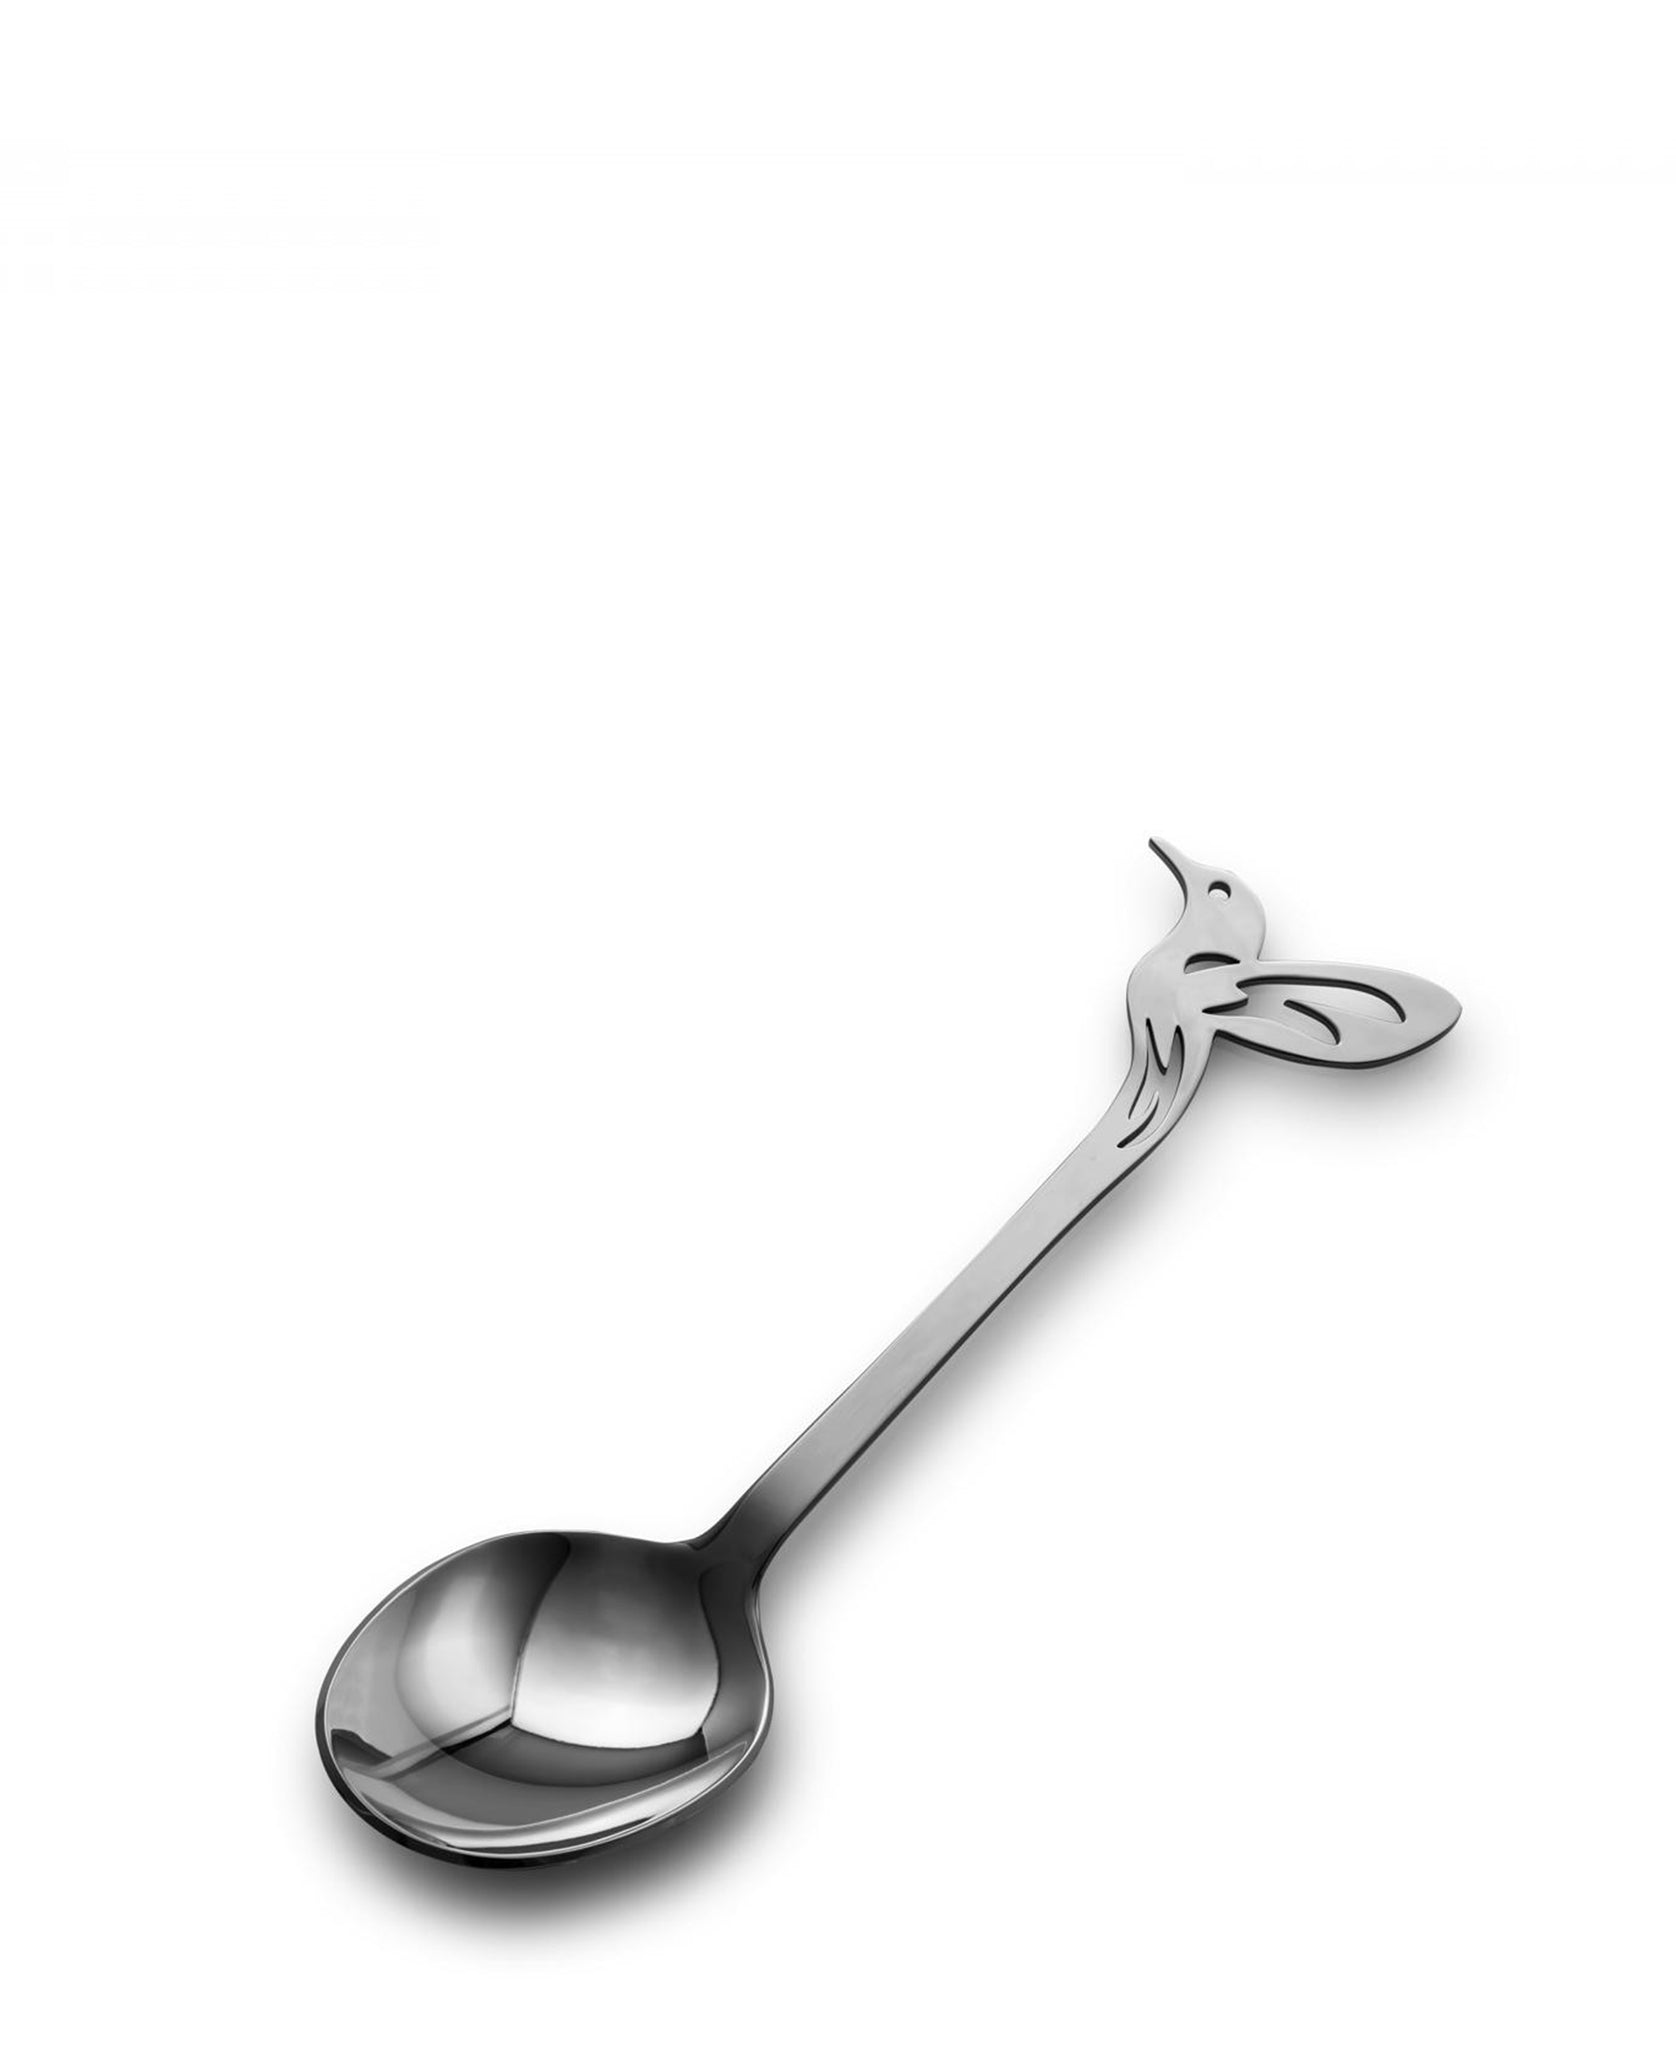 Carrol Boyes Solo Spoon - Silver